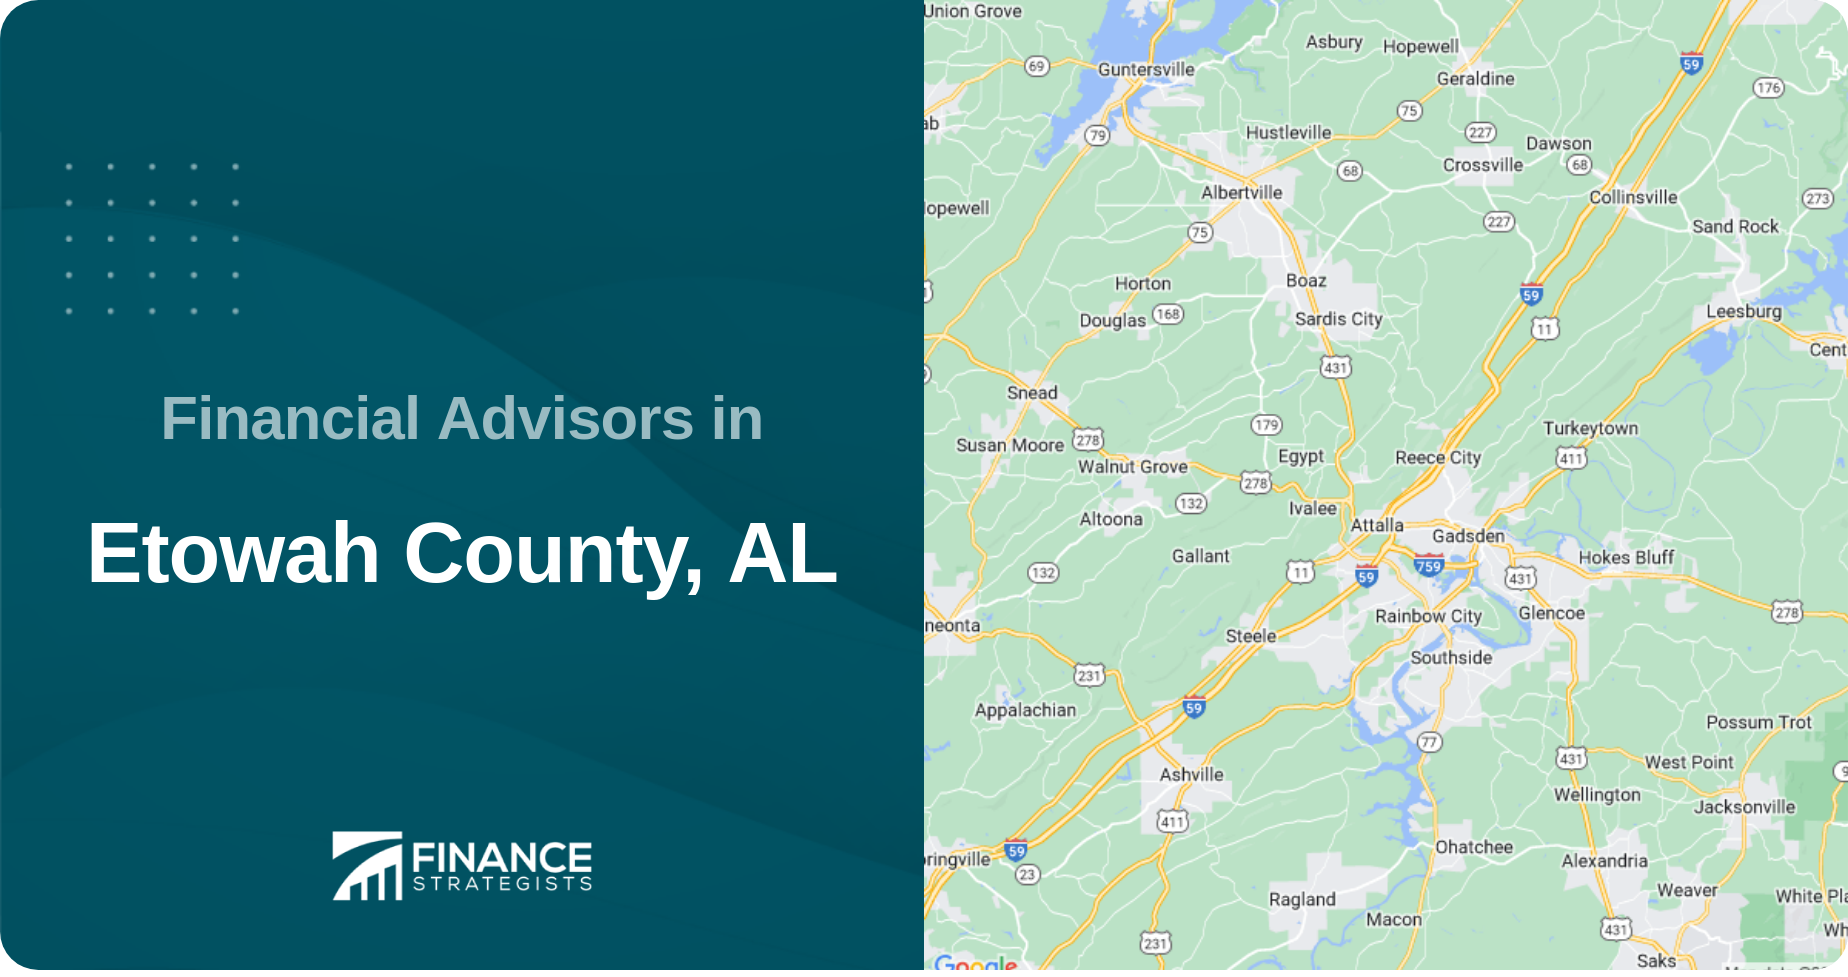 Financial Advisors in Etowah County, AL